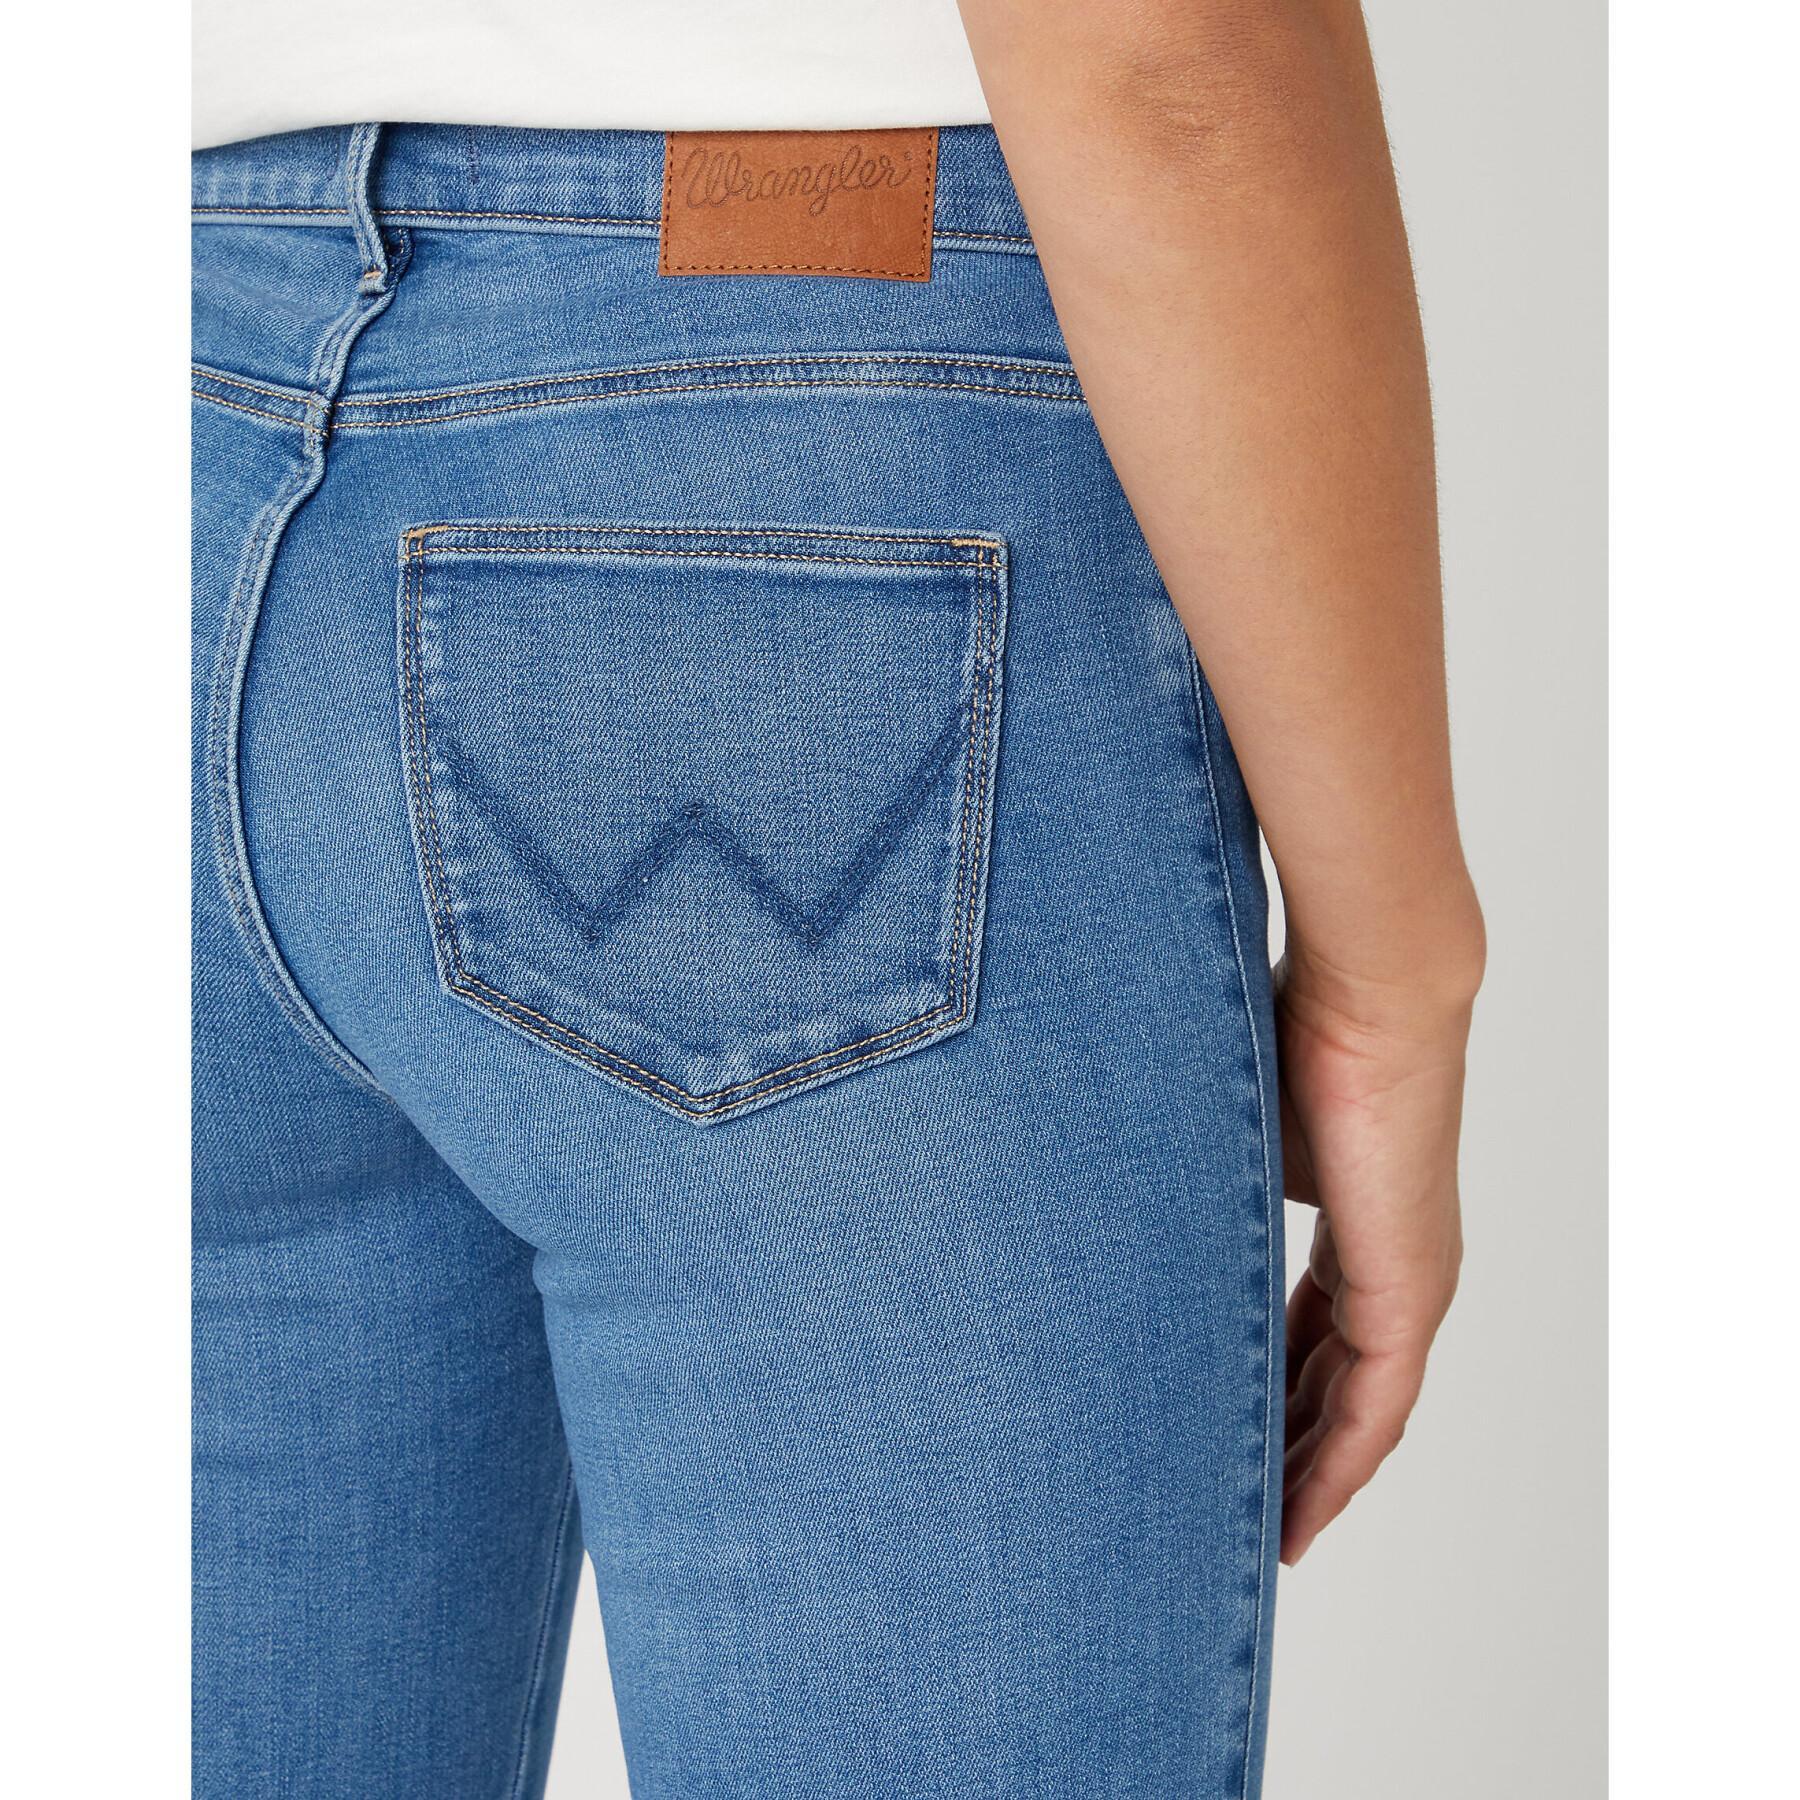 Jeans för kvinnor Wrangler Straight